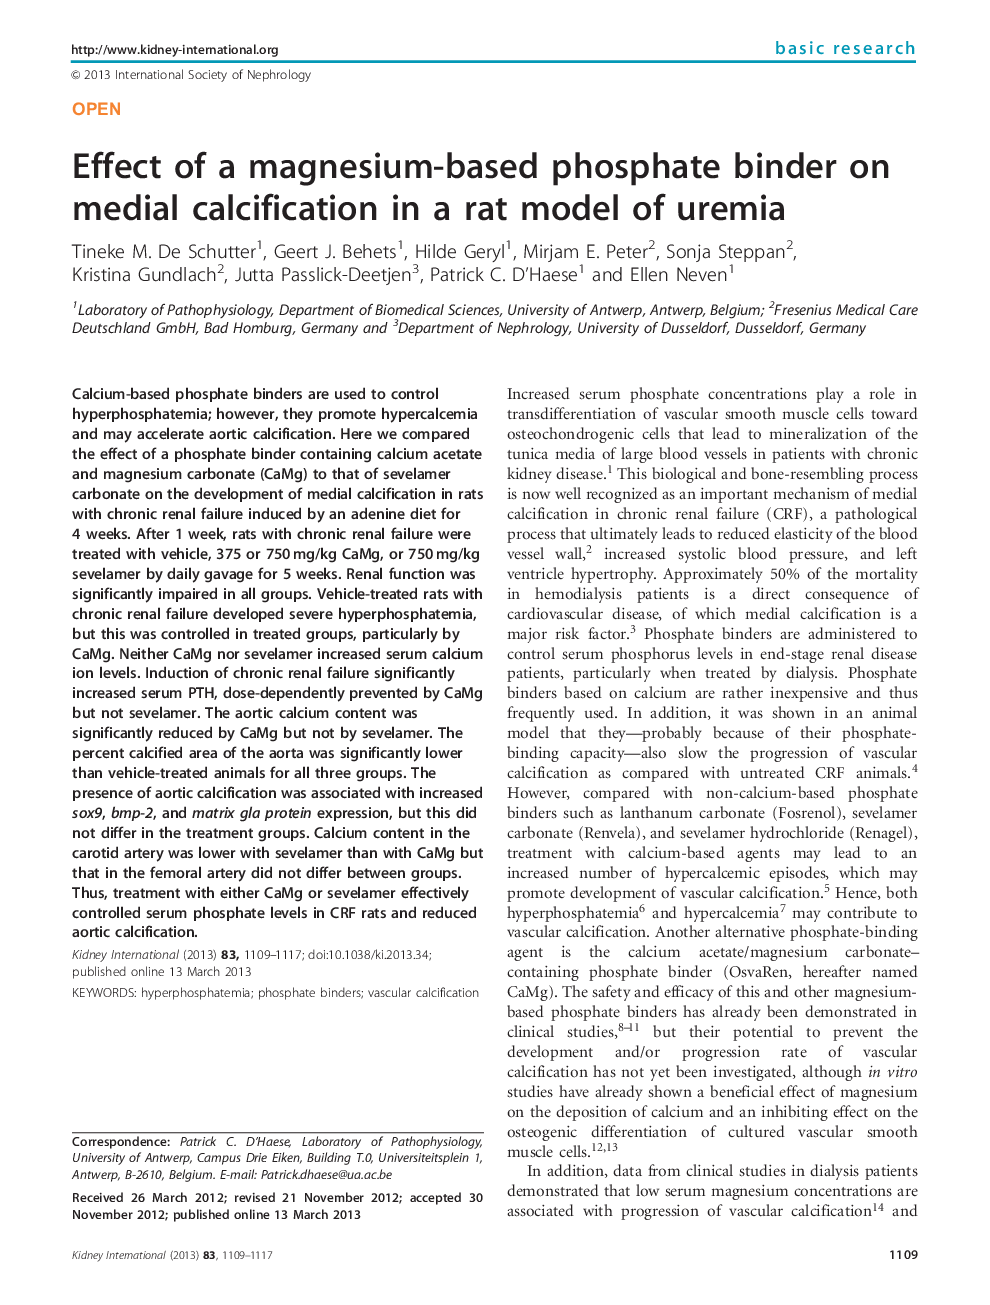 اثر یک فسفات حاوی منیزیم بر روی کلسیفیکاسیون داخلی در یک مدل موش اورمیه 